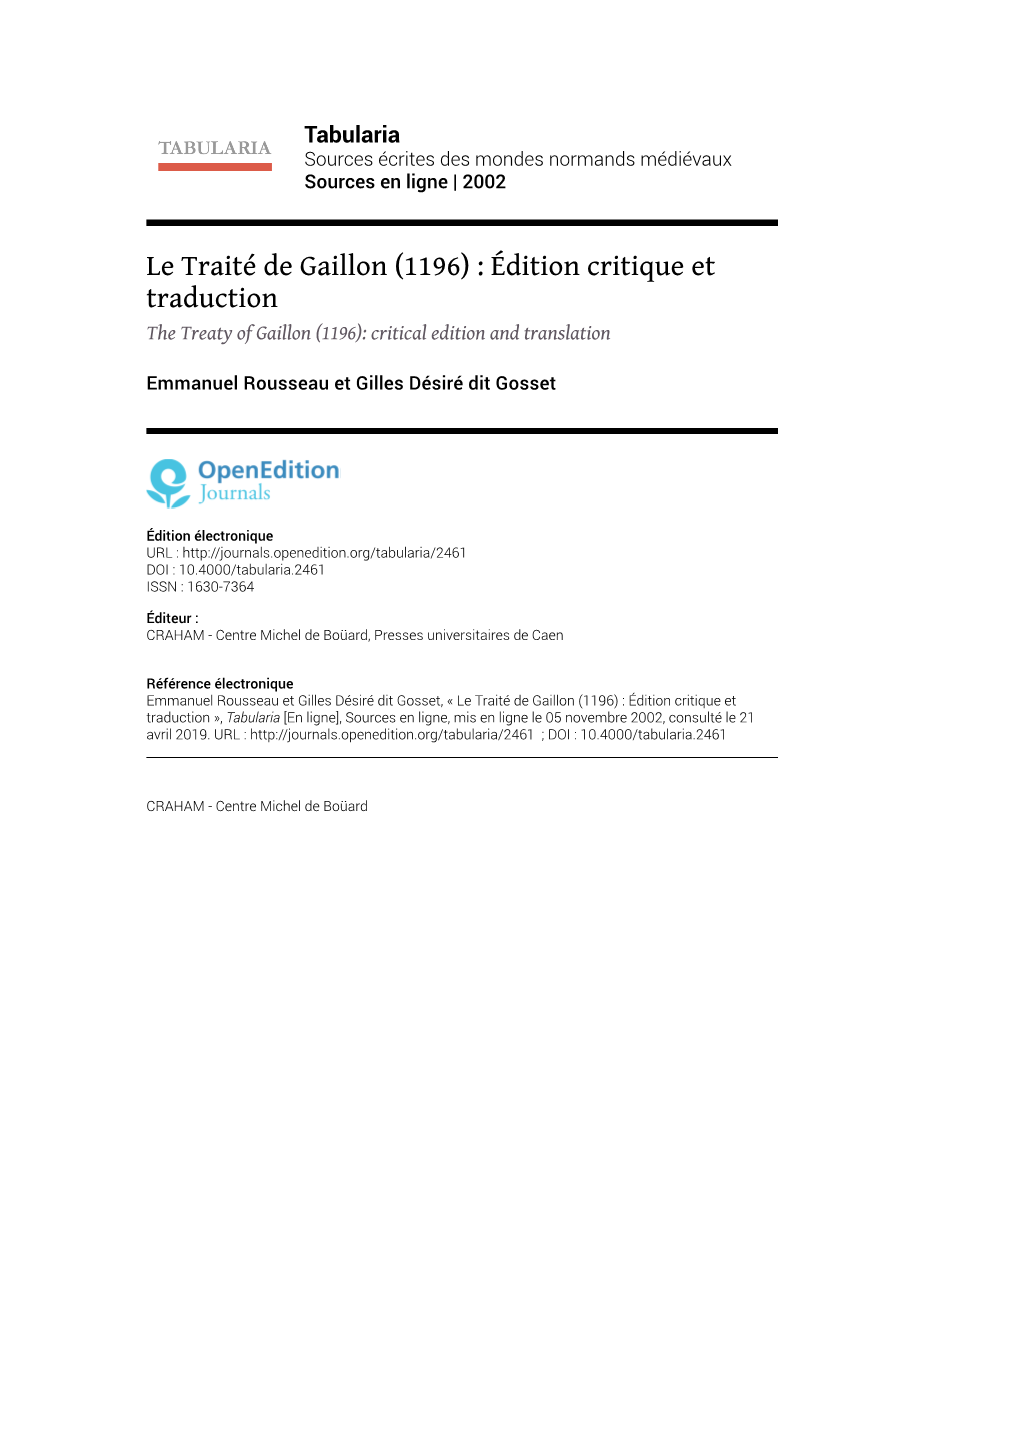 Le Traité De Gaillon \(1196\) : Édition Critique Et Traduction